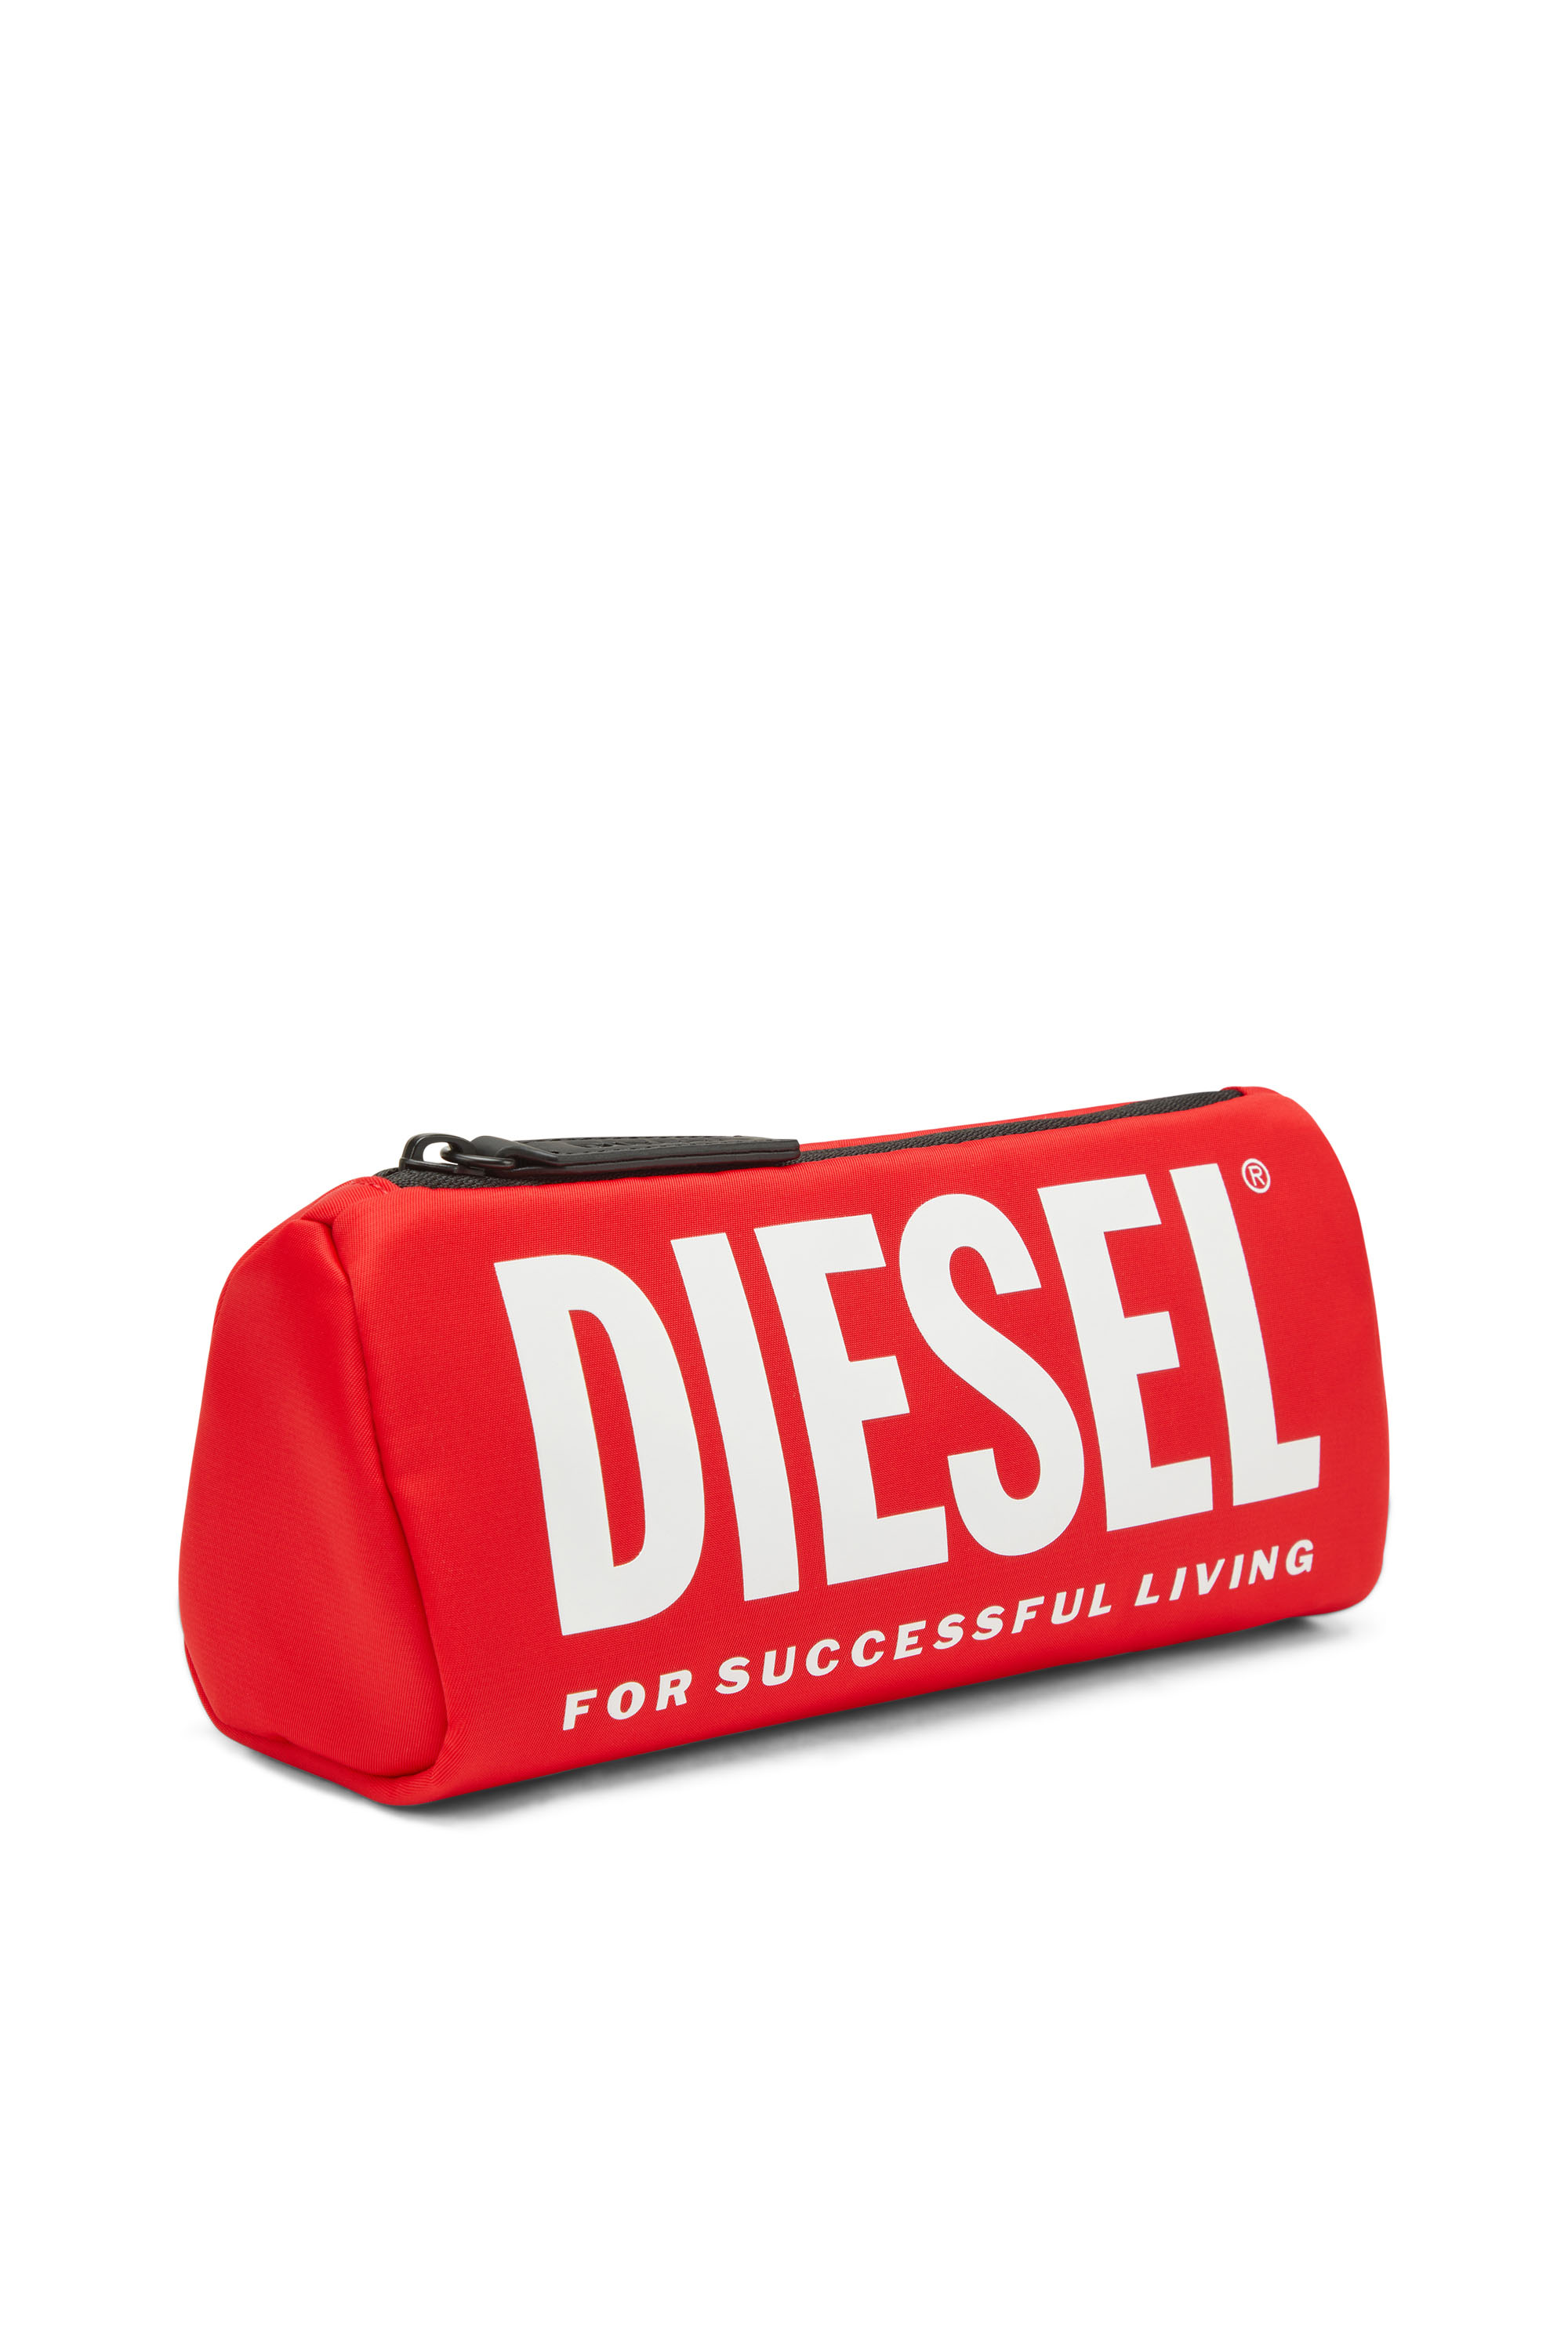 Diesel - WCASELOGO, Red - Image 4